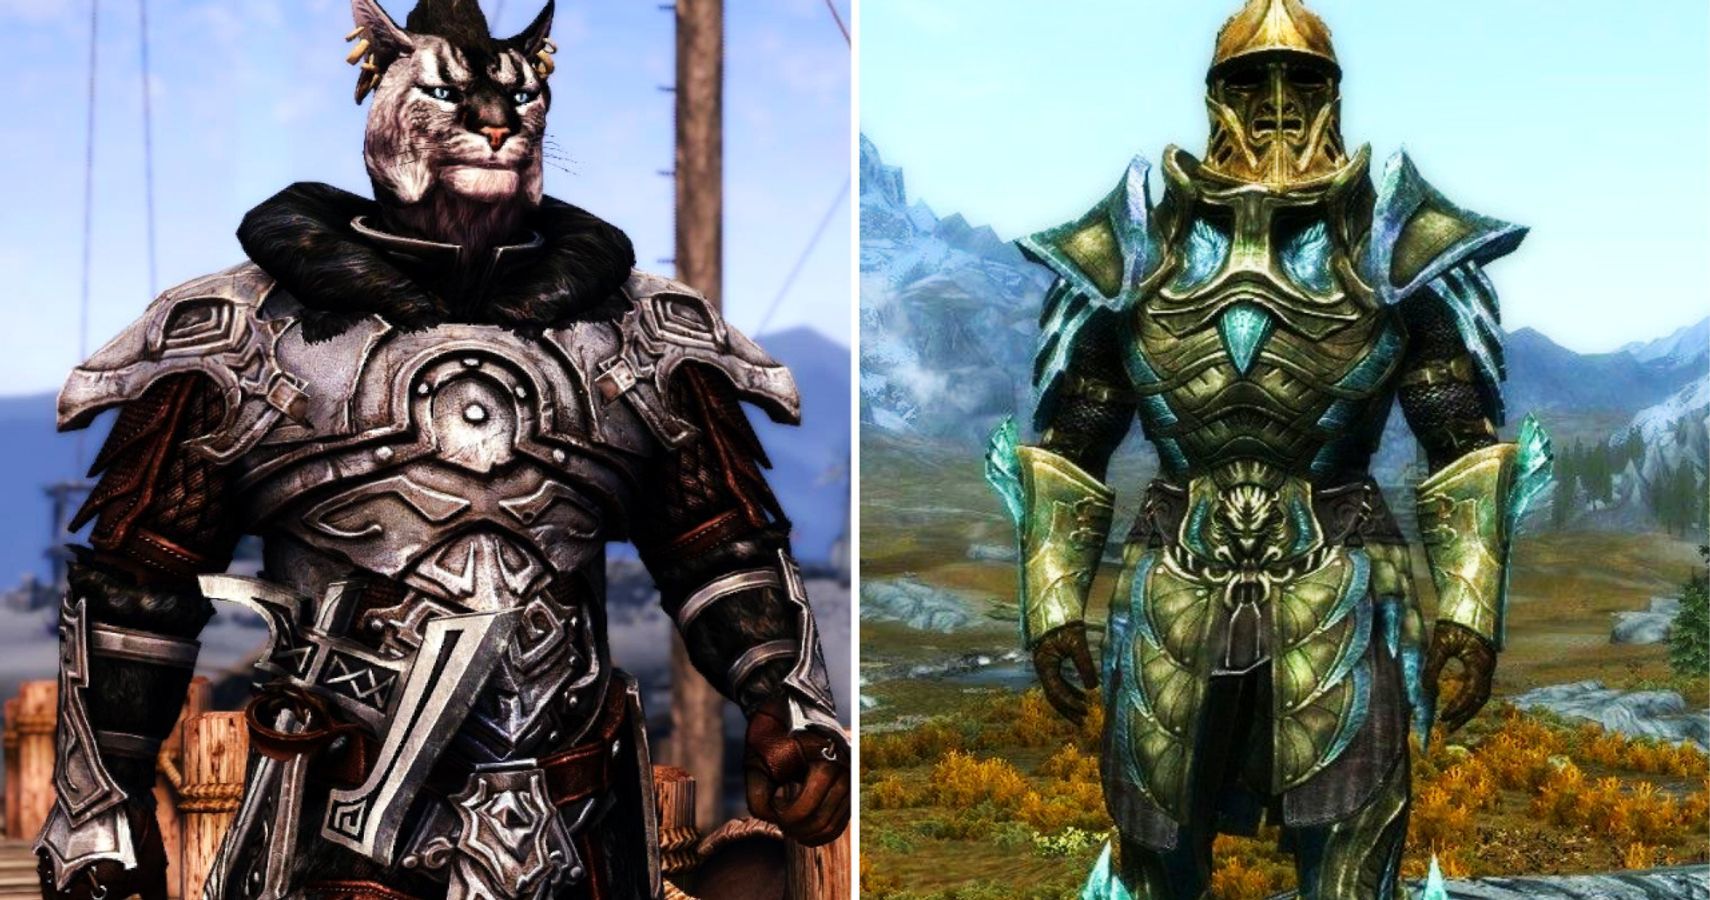 skyrim coolest armor mods